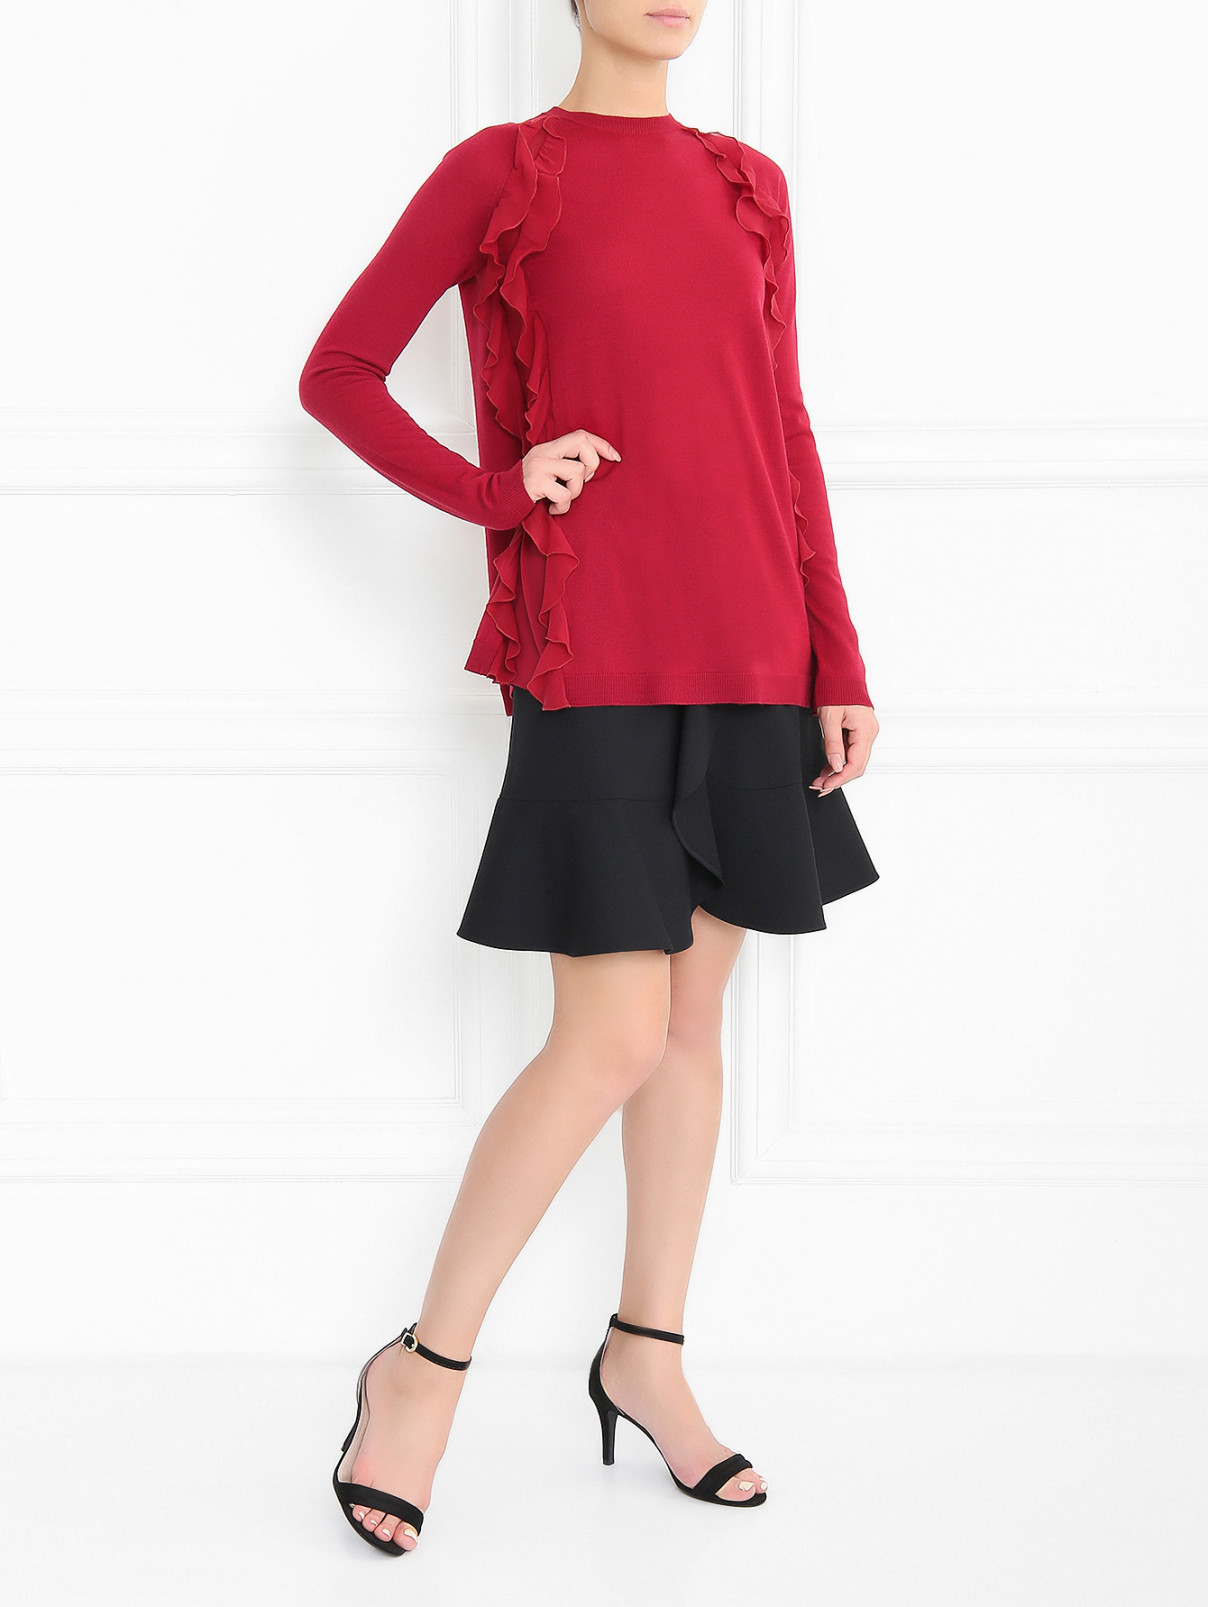 Джемпер из шерсти с воланами из шелка Red Valentino  –  Модель Общий вид  – Цвет:  Красный